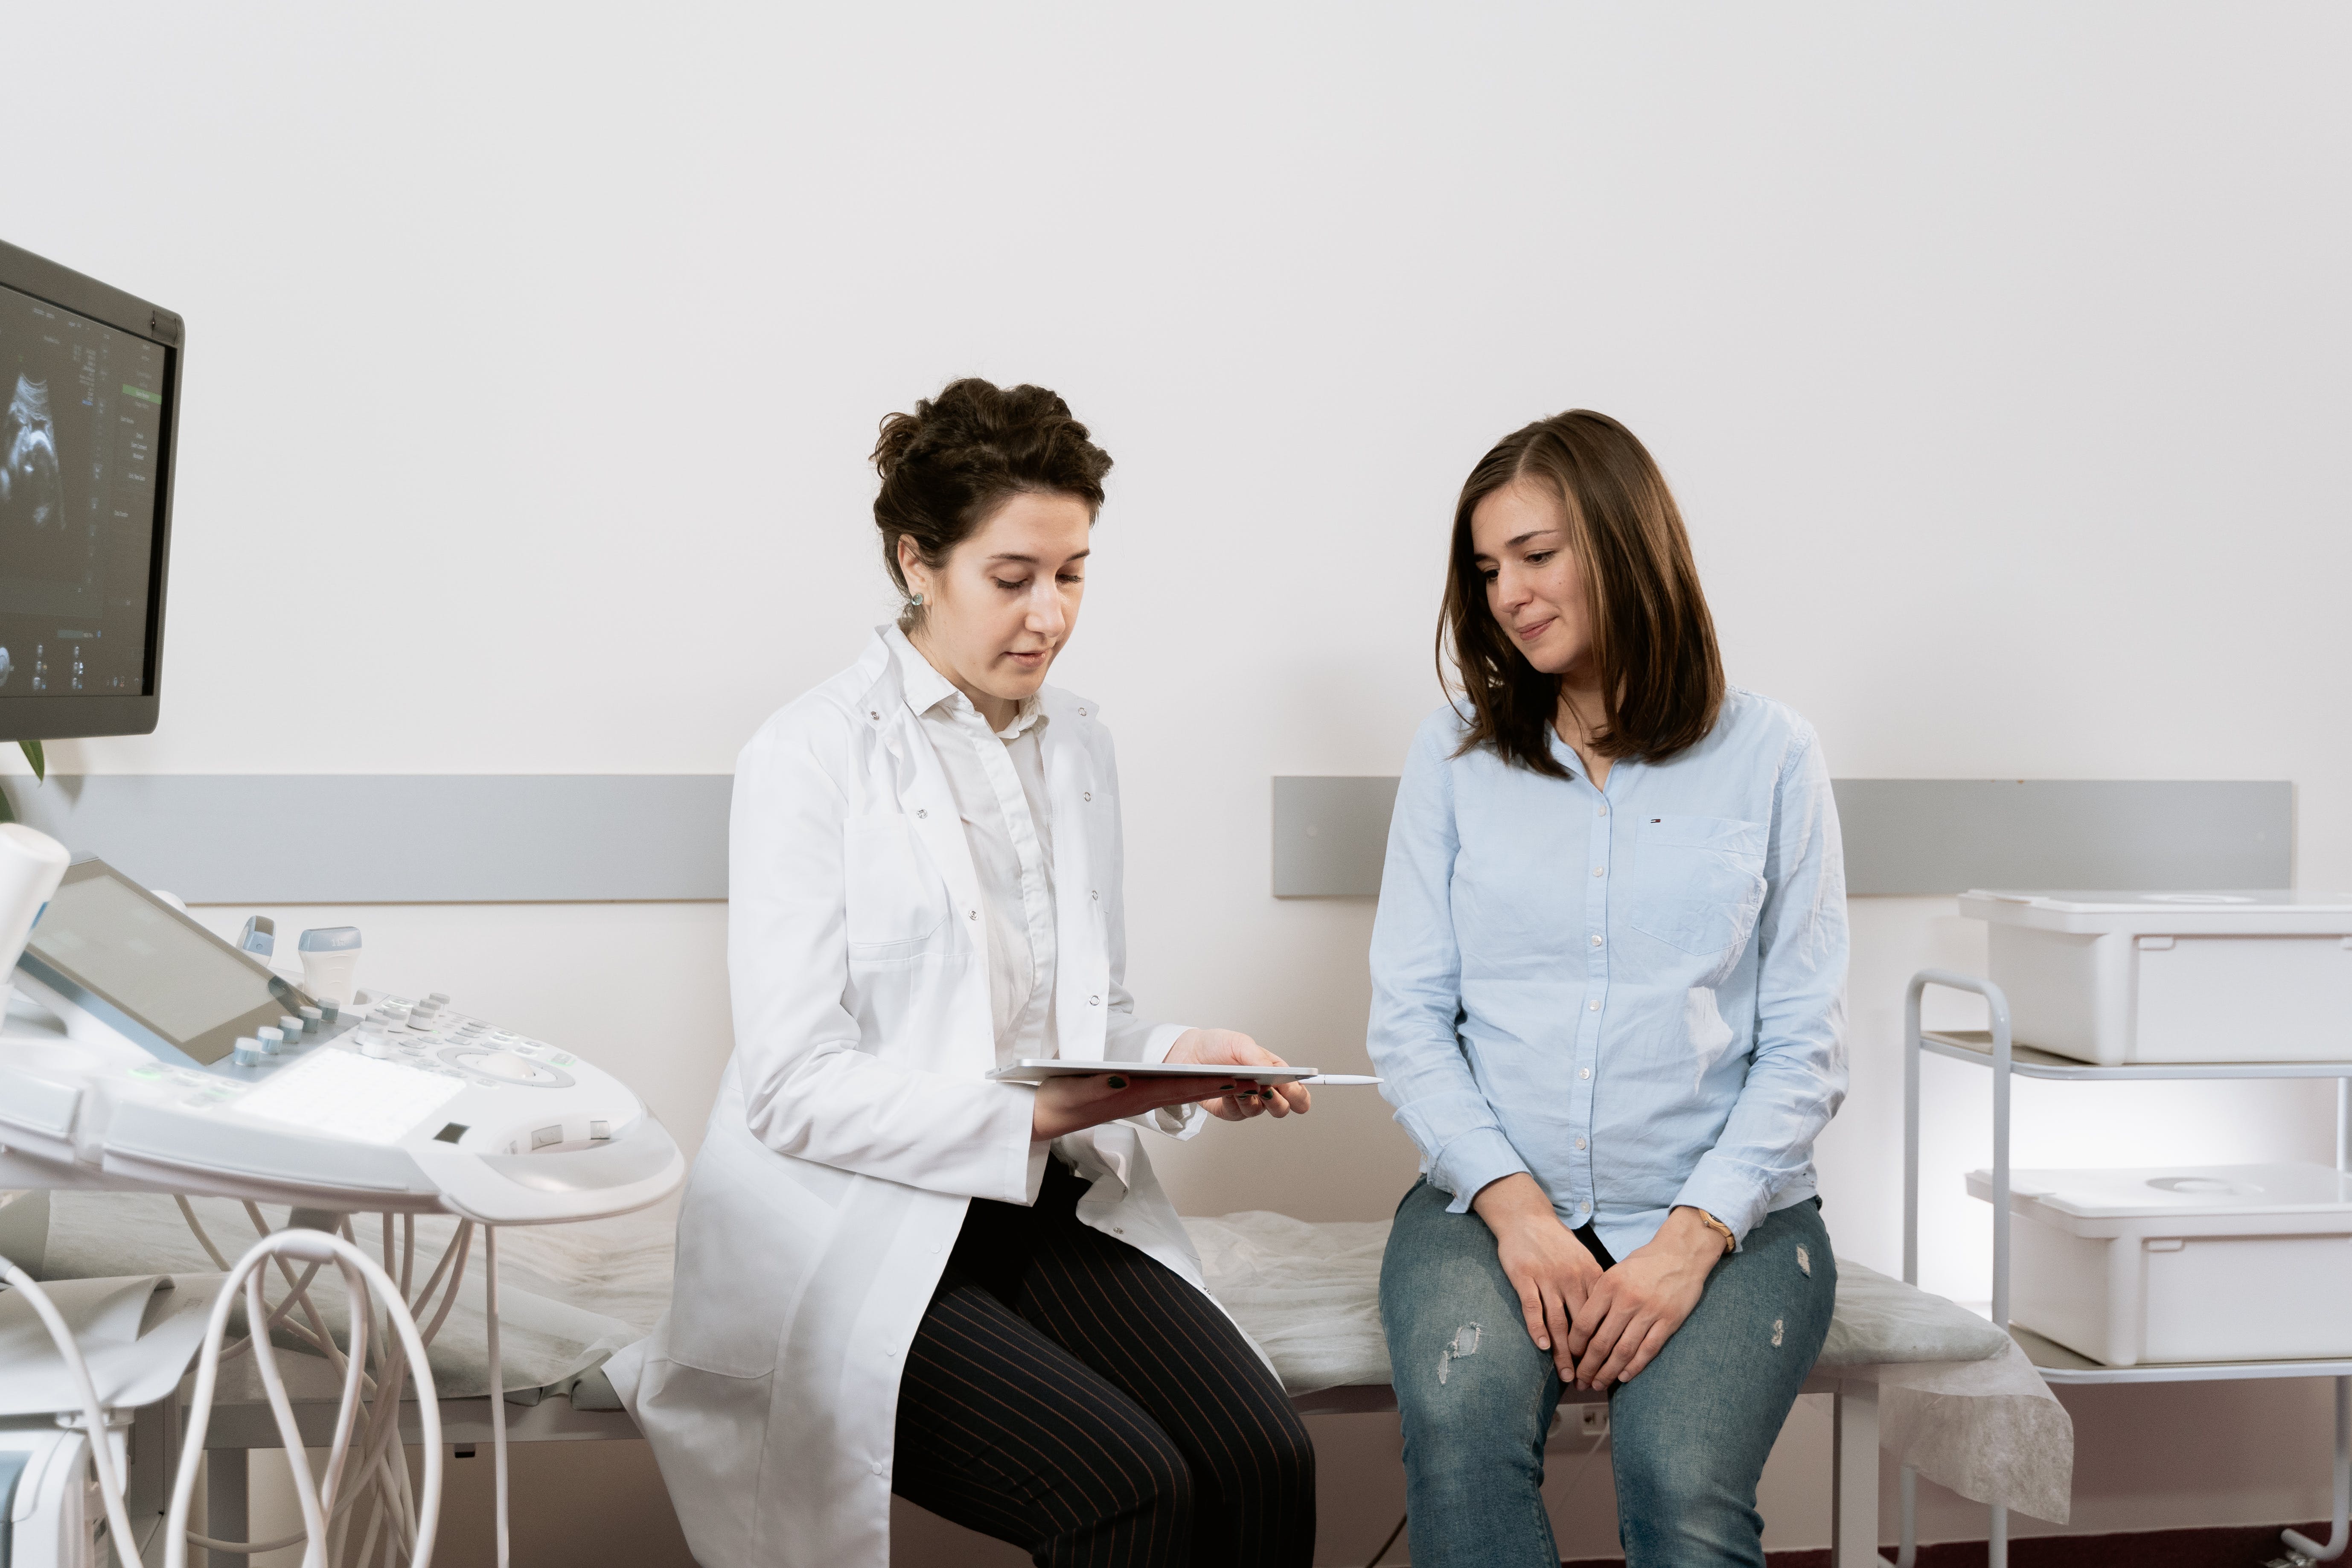 Une femme enceinte en consultation avec un médecin. | Source : Pexels